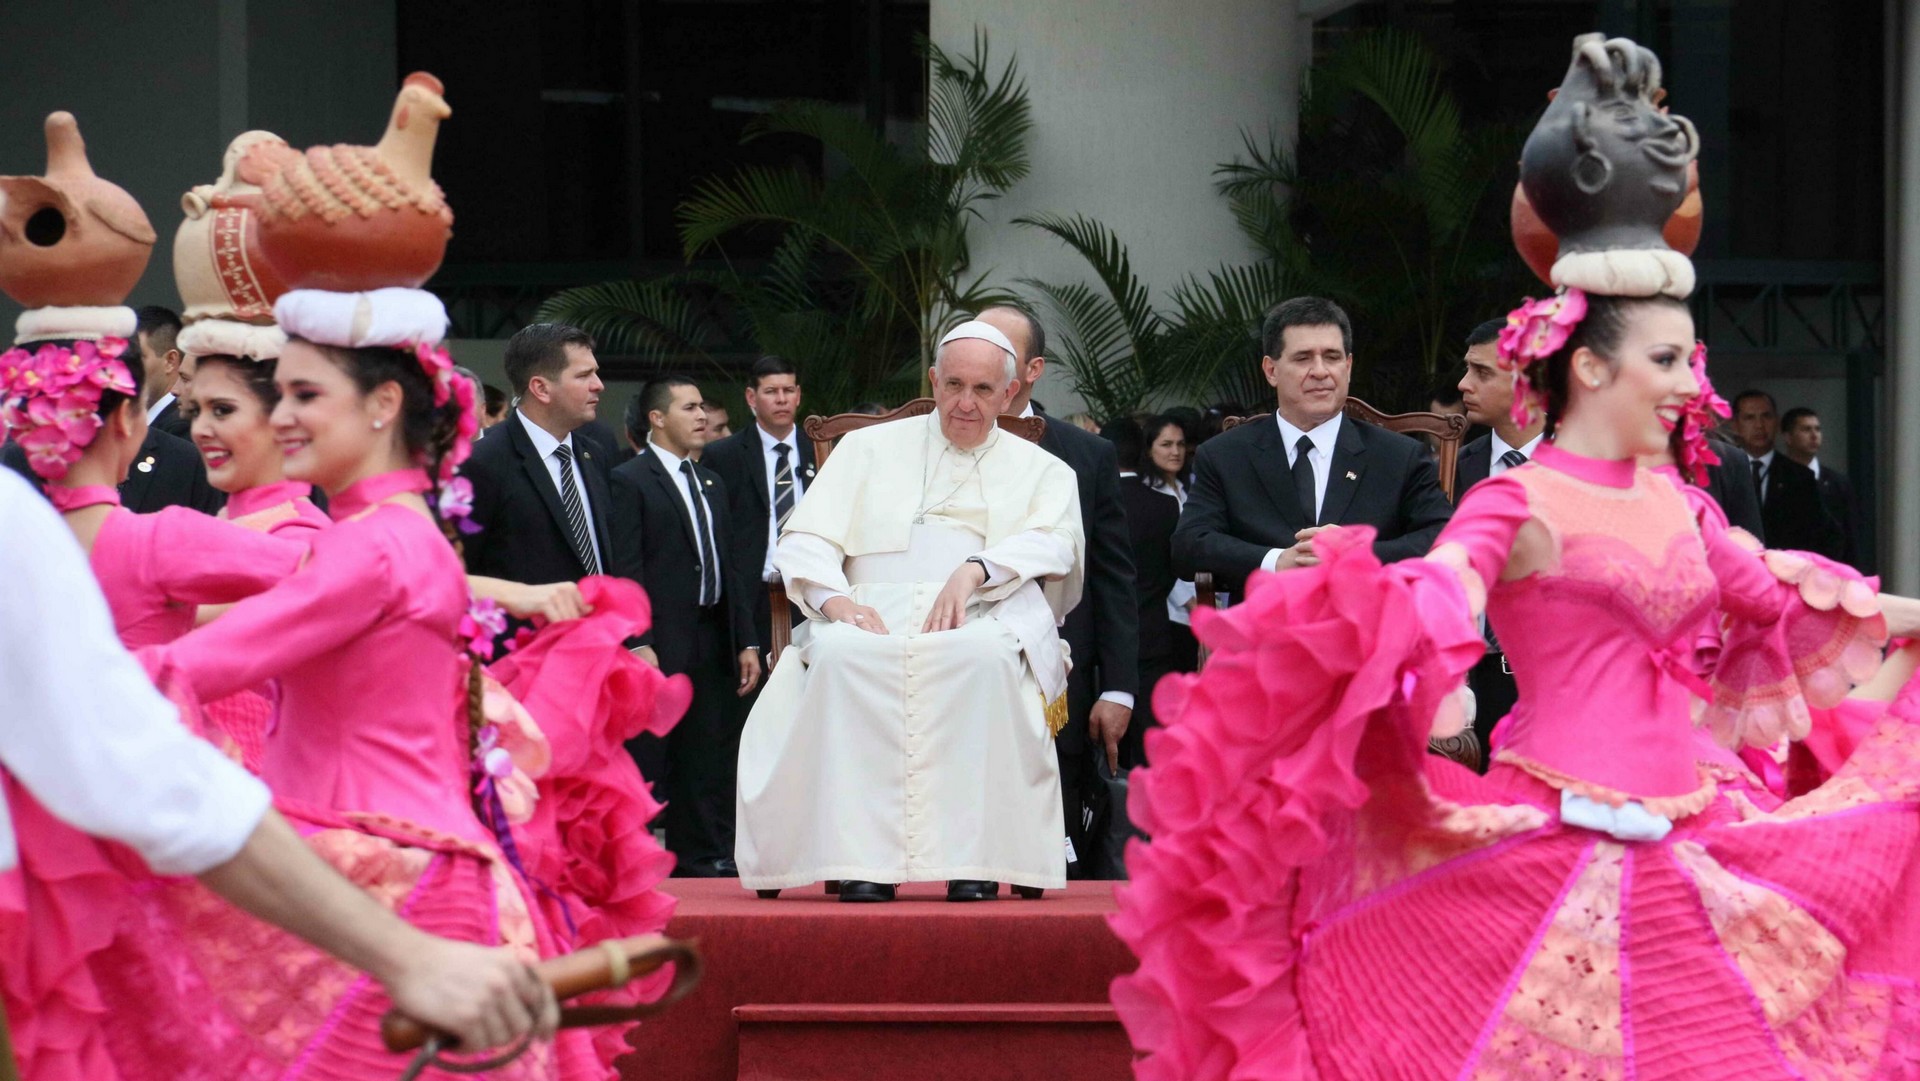 arrivée du pape François au Paraguay, le 10 juillet 2015 (photo Keystone) 